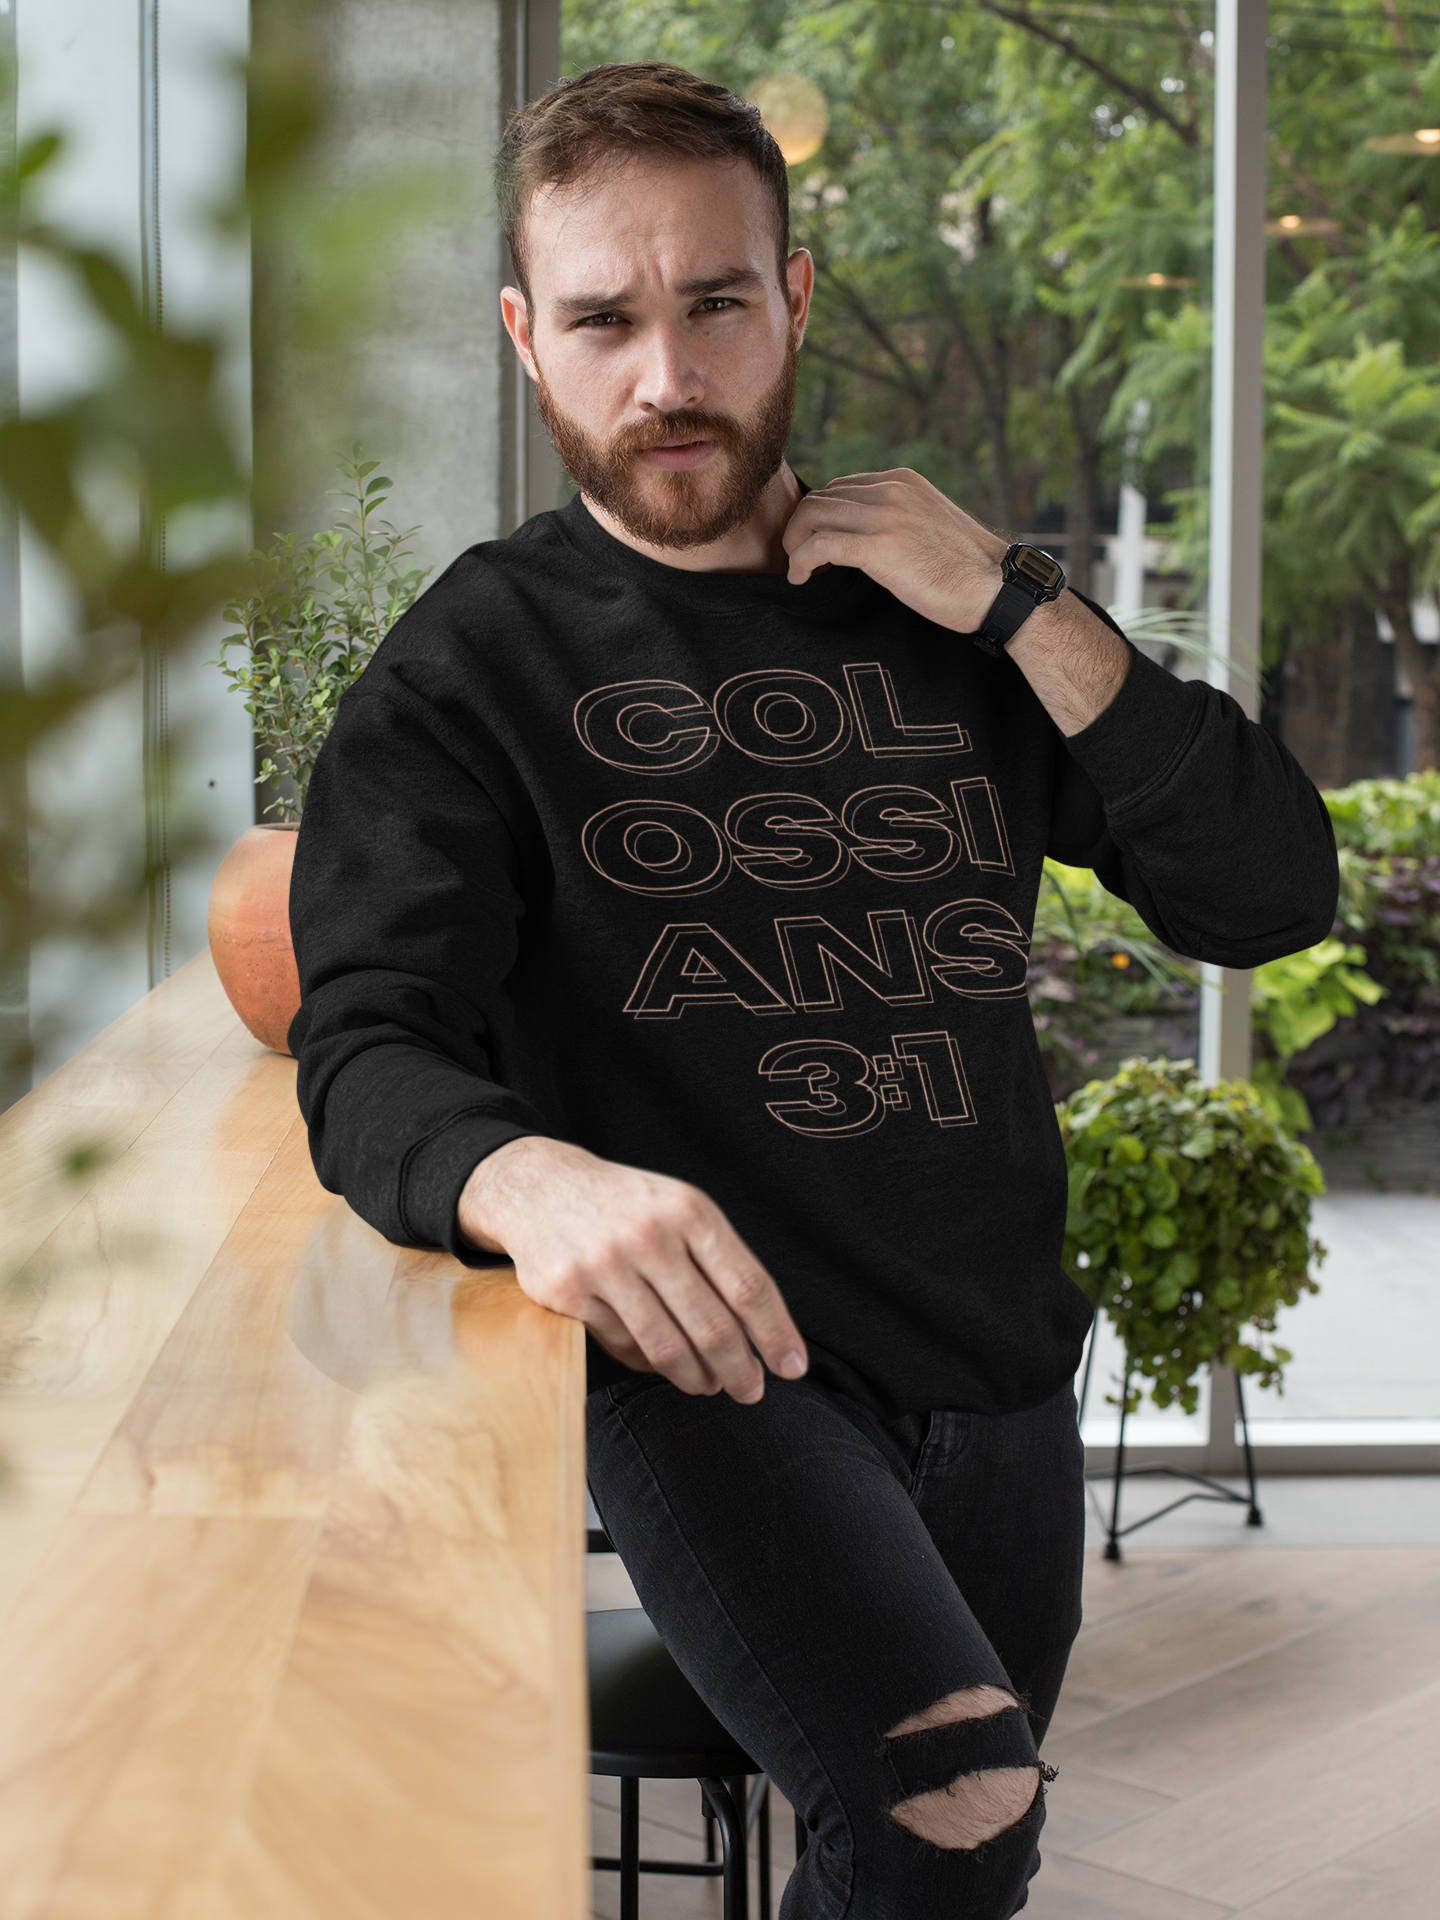 Christian sweatshirt